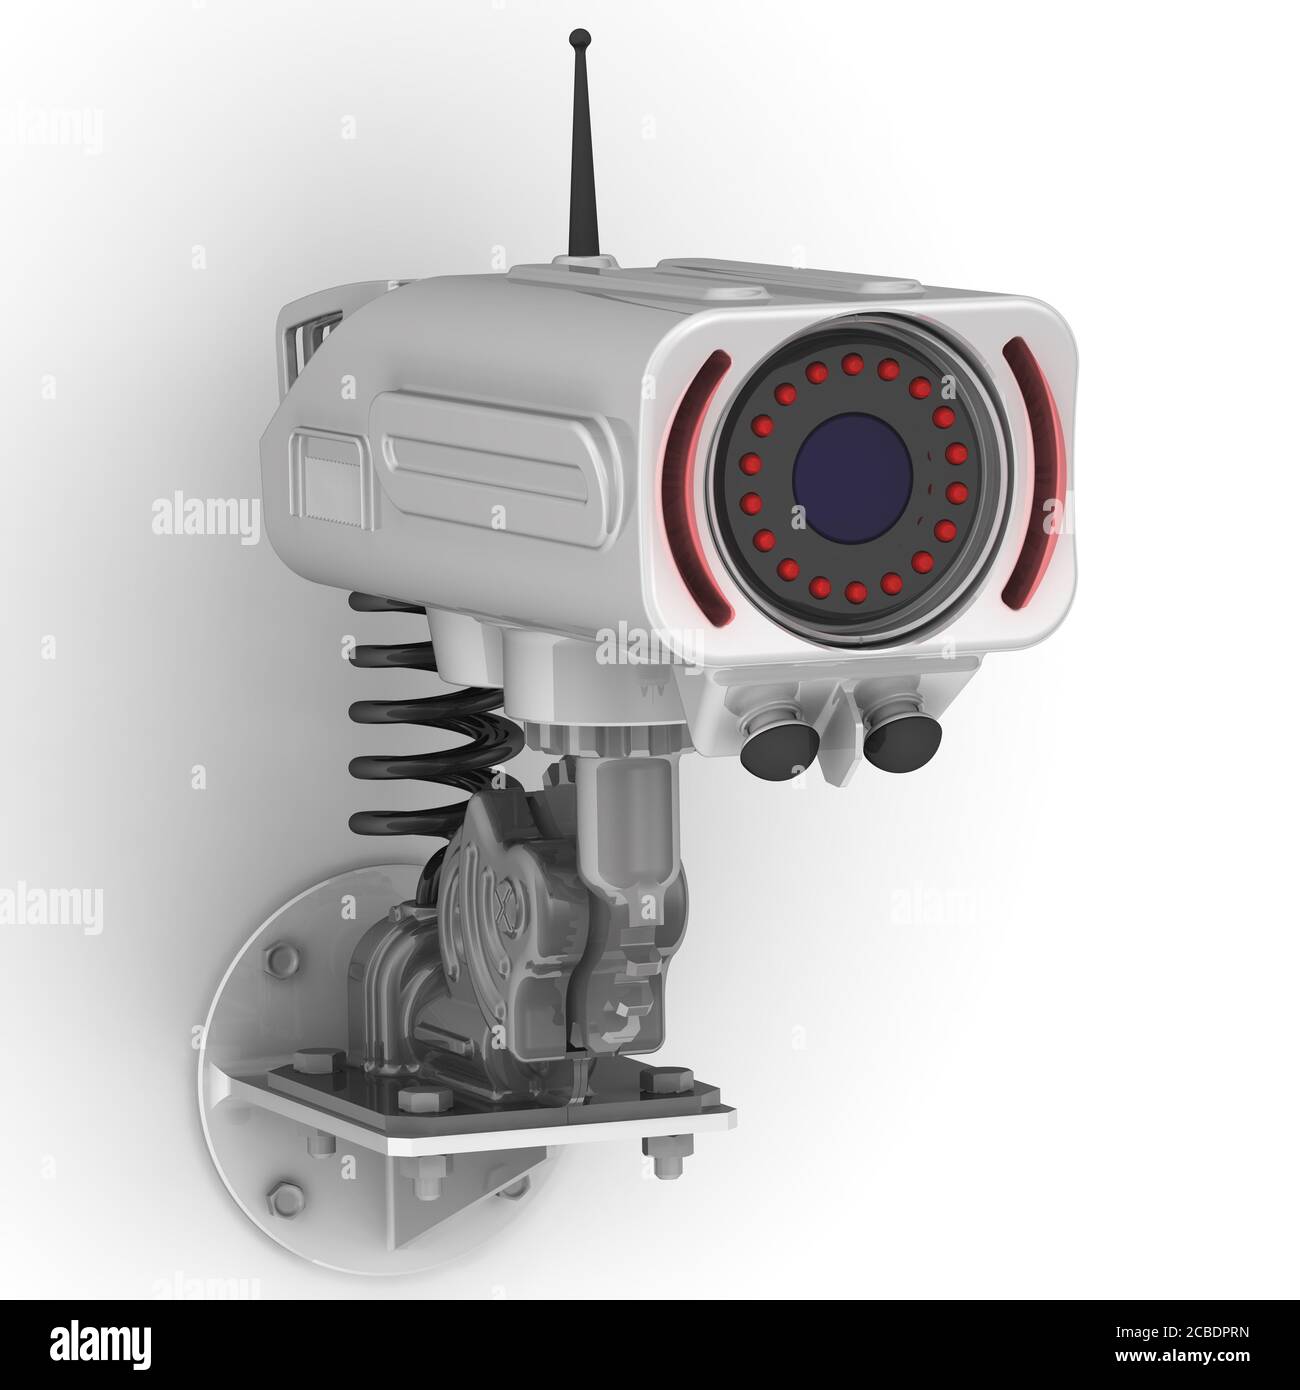 Une caméra de vidéosurveillance au mur. Caméra de sécurité moderne (CCTV). Illustration 3D. Isolé Banque D'Images